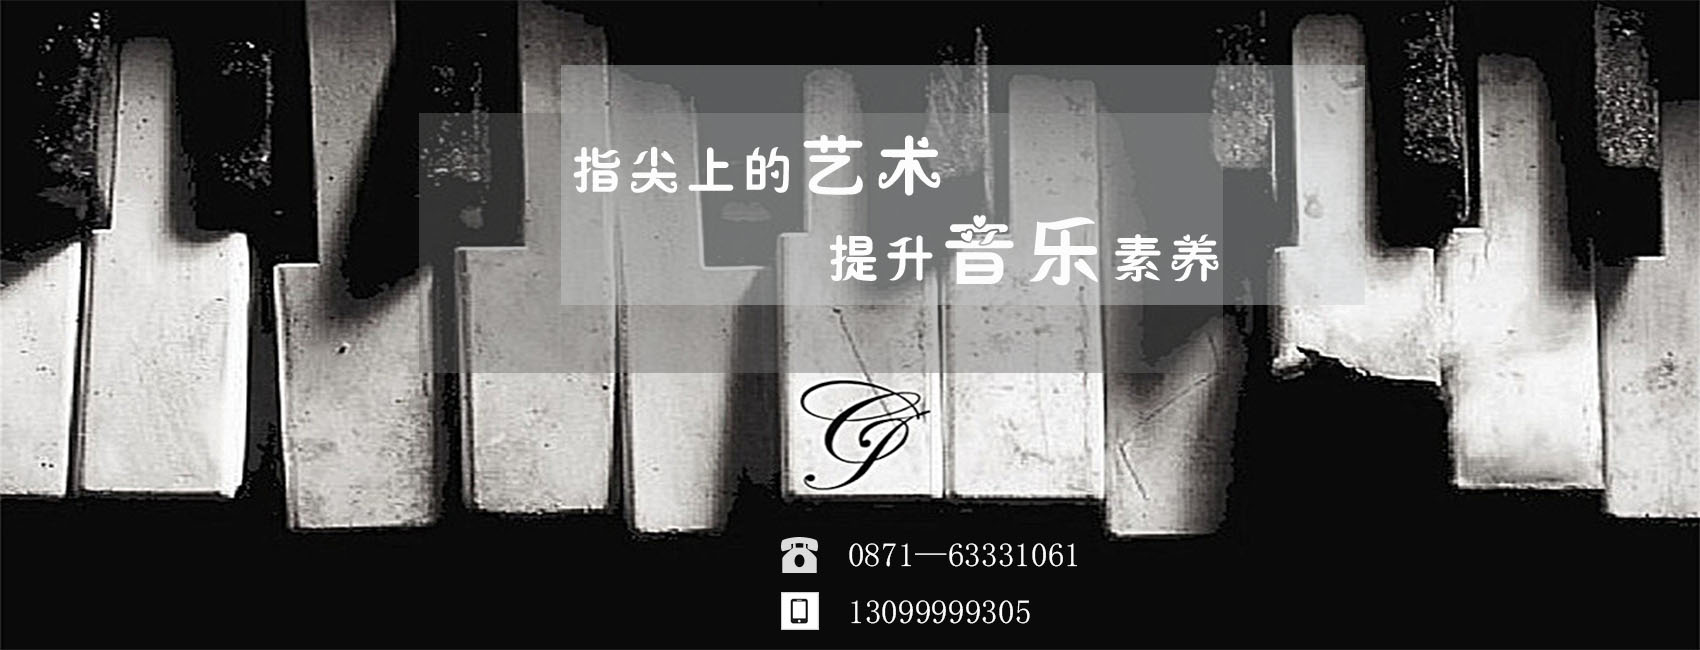 云南钢琴培训学校提到钢琴演奏中指法合理运用的重要性